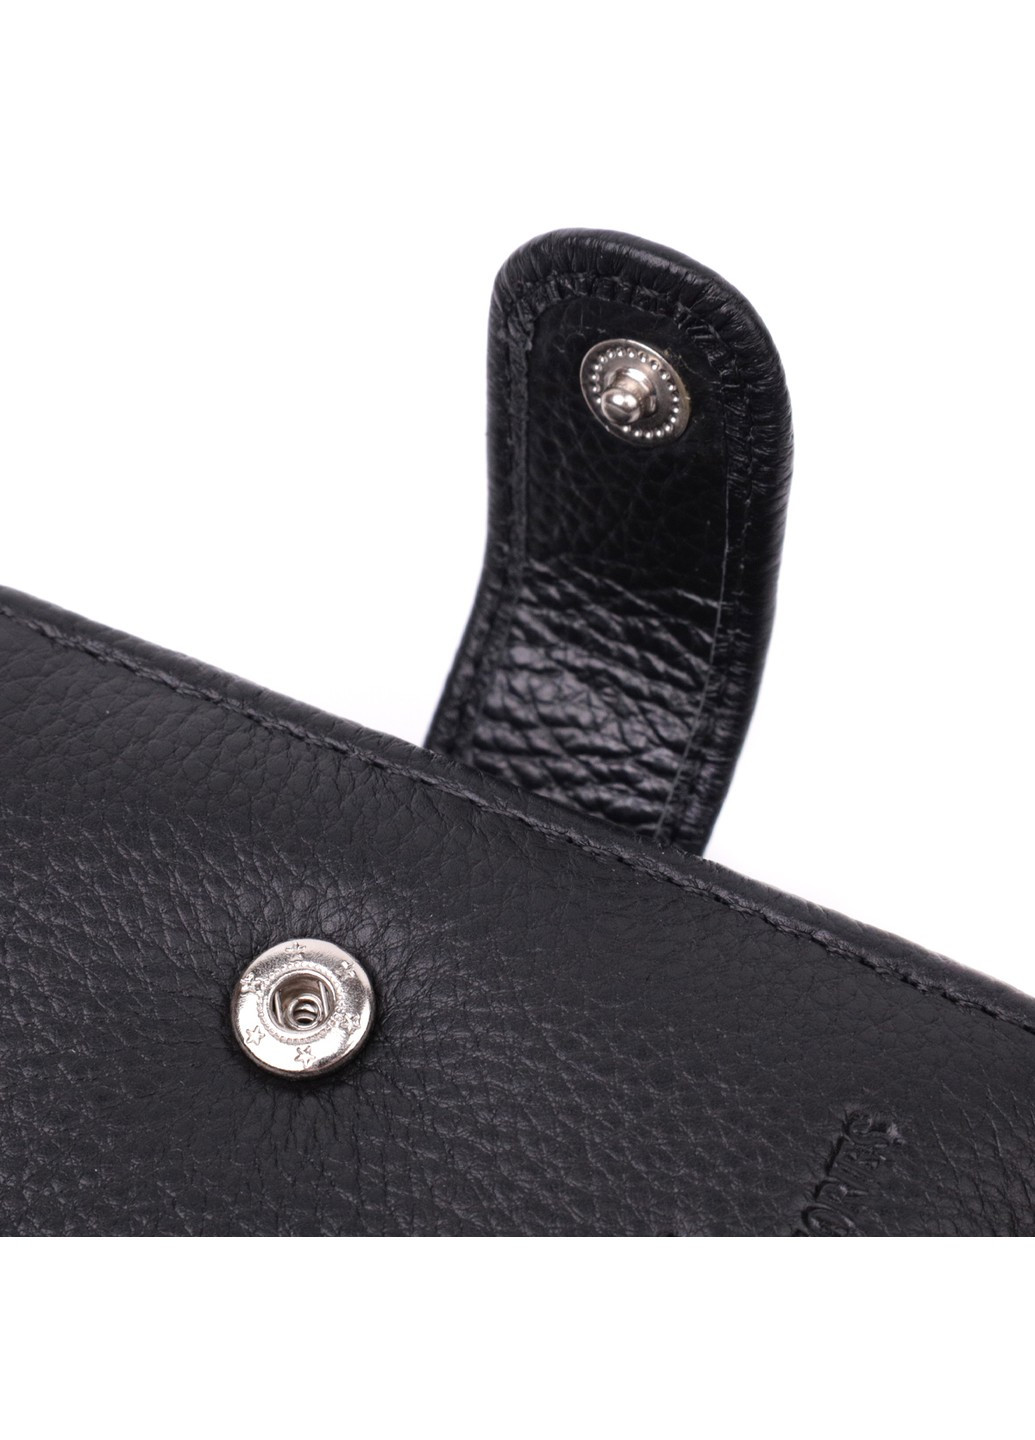 Горизонтальное портмоне для мужчин из натуральной кожи 22459 Черный st leather (278001122)